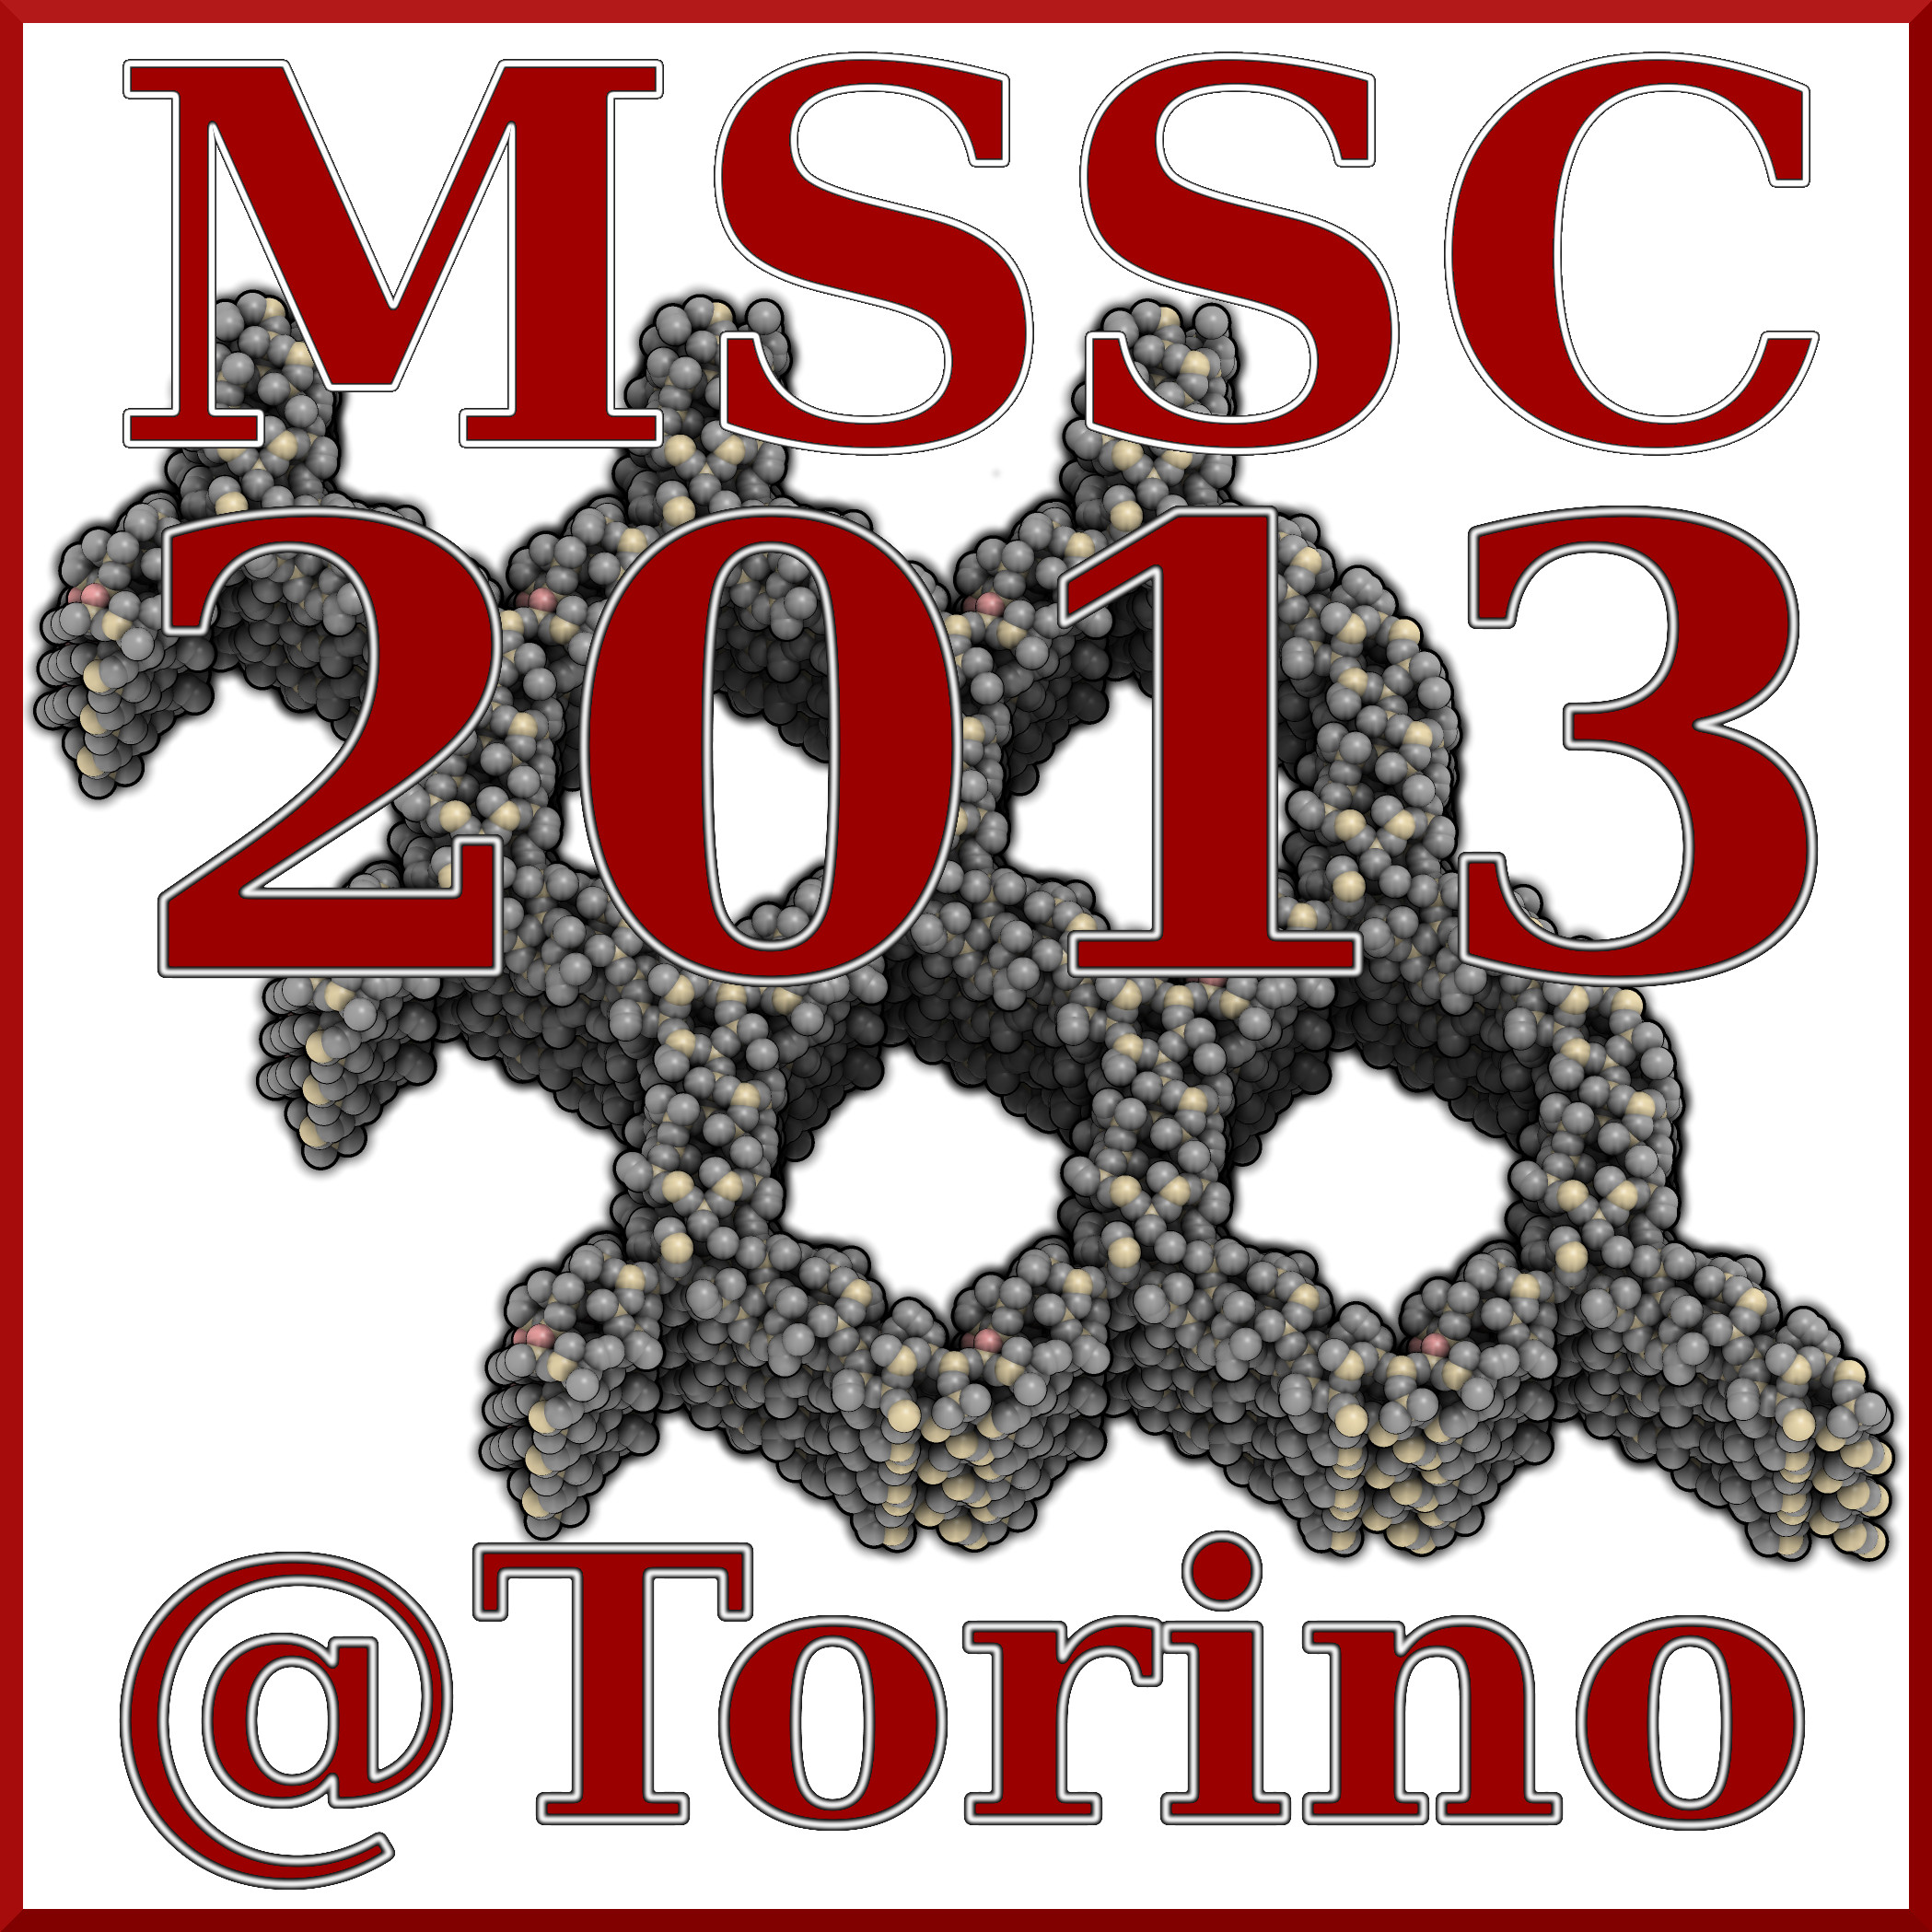 Ab-initio MSSC2013